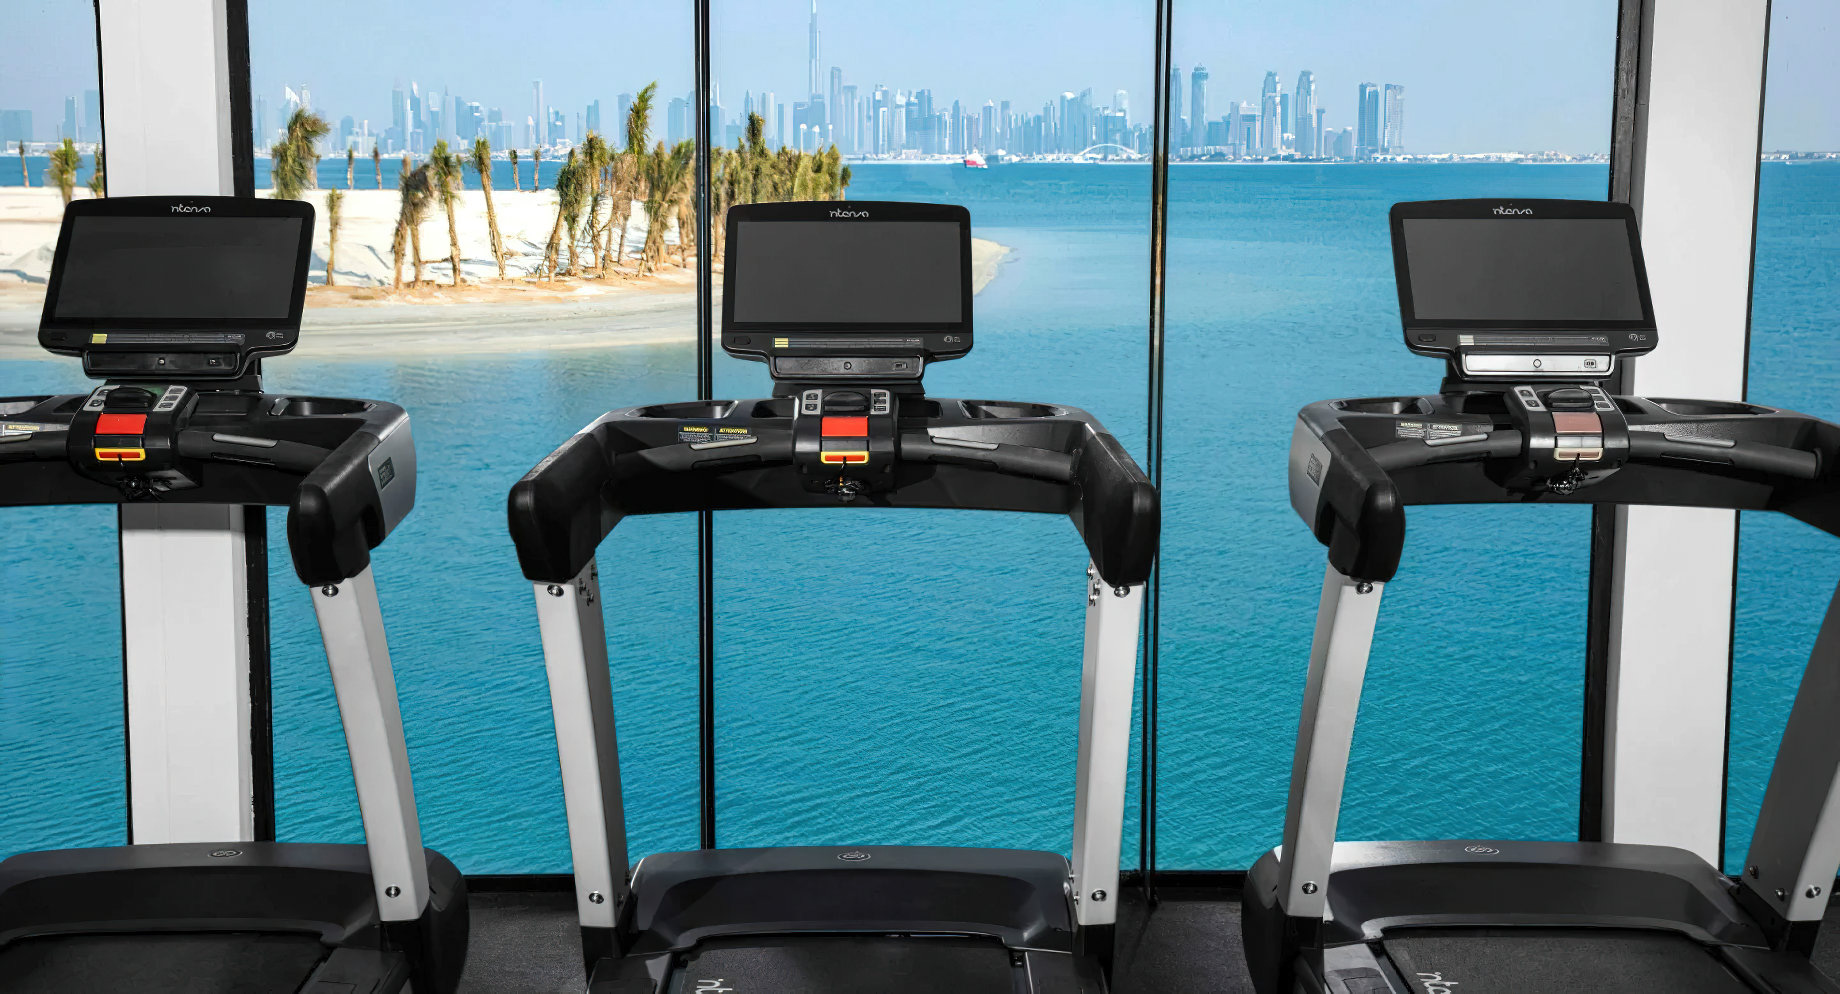 Anantara World Islands Dubai Resort – Dubai, UAE – Gym